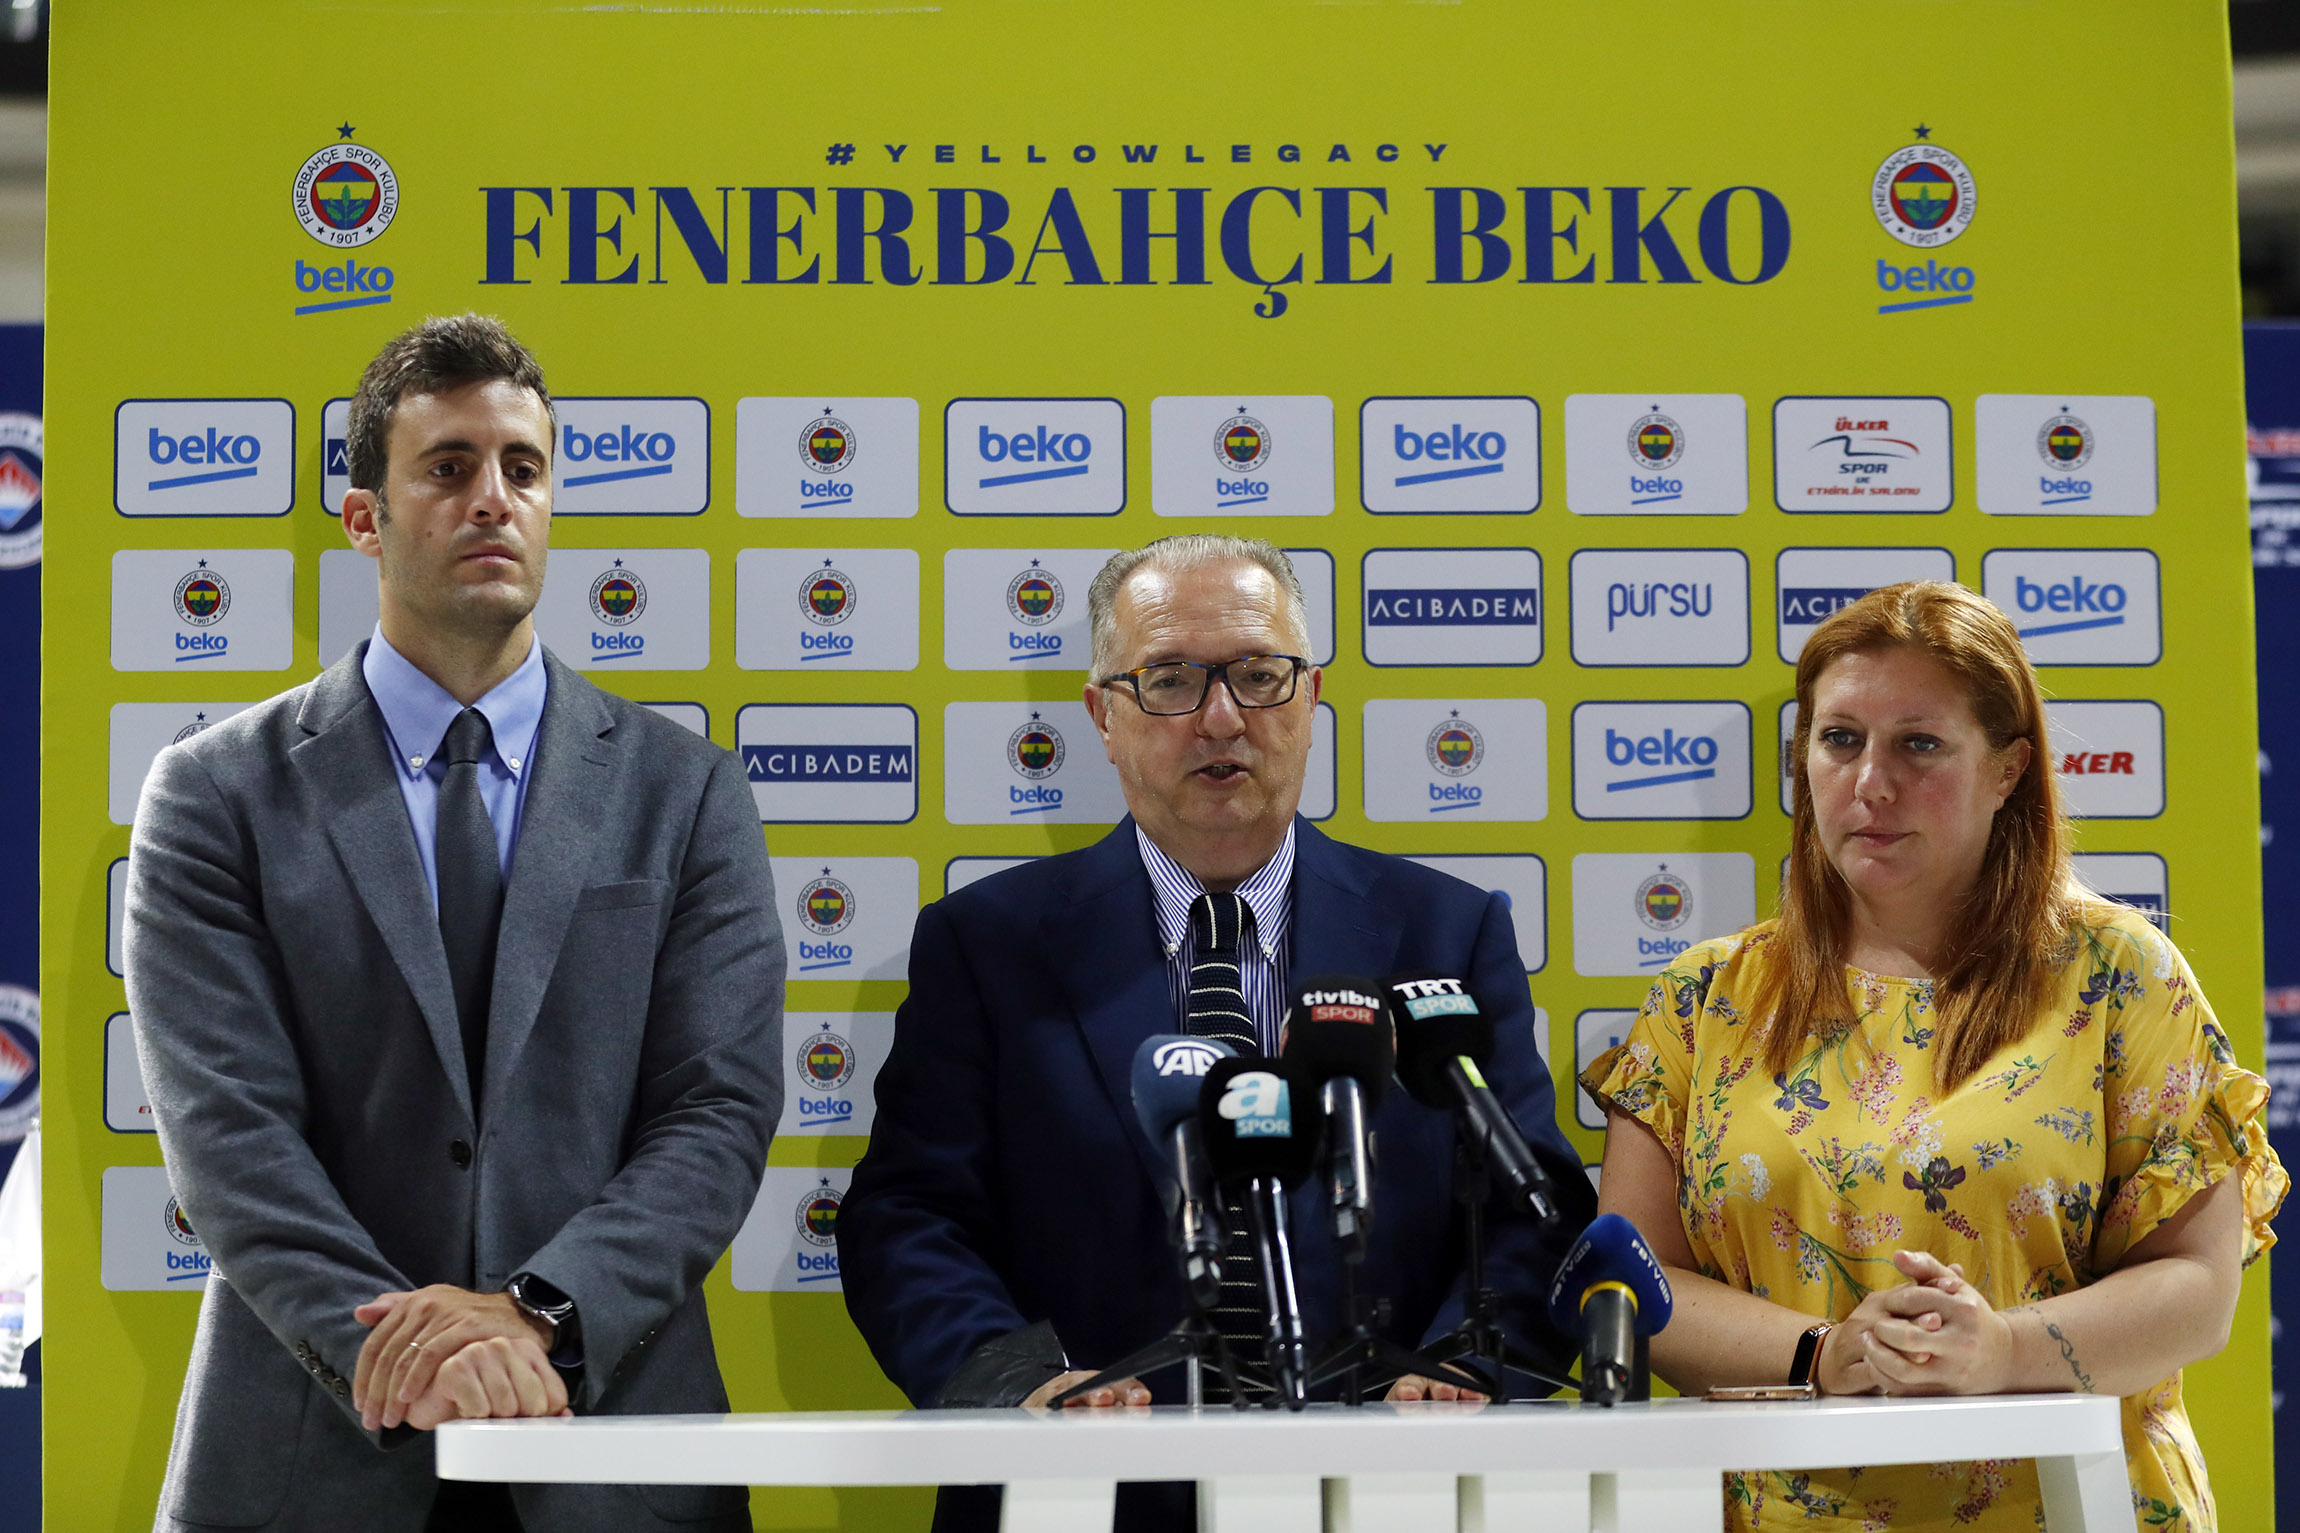 Fenerbahçe Beko’da Maurizio Gherardini ve Derya Yannier Yeni Sezon Öncesi Açıklamalarda Bulundu